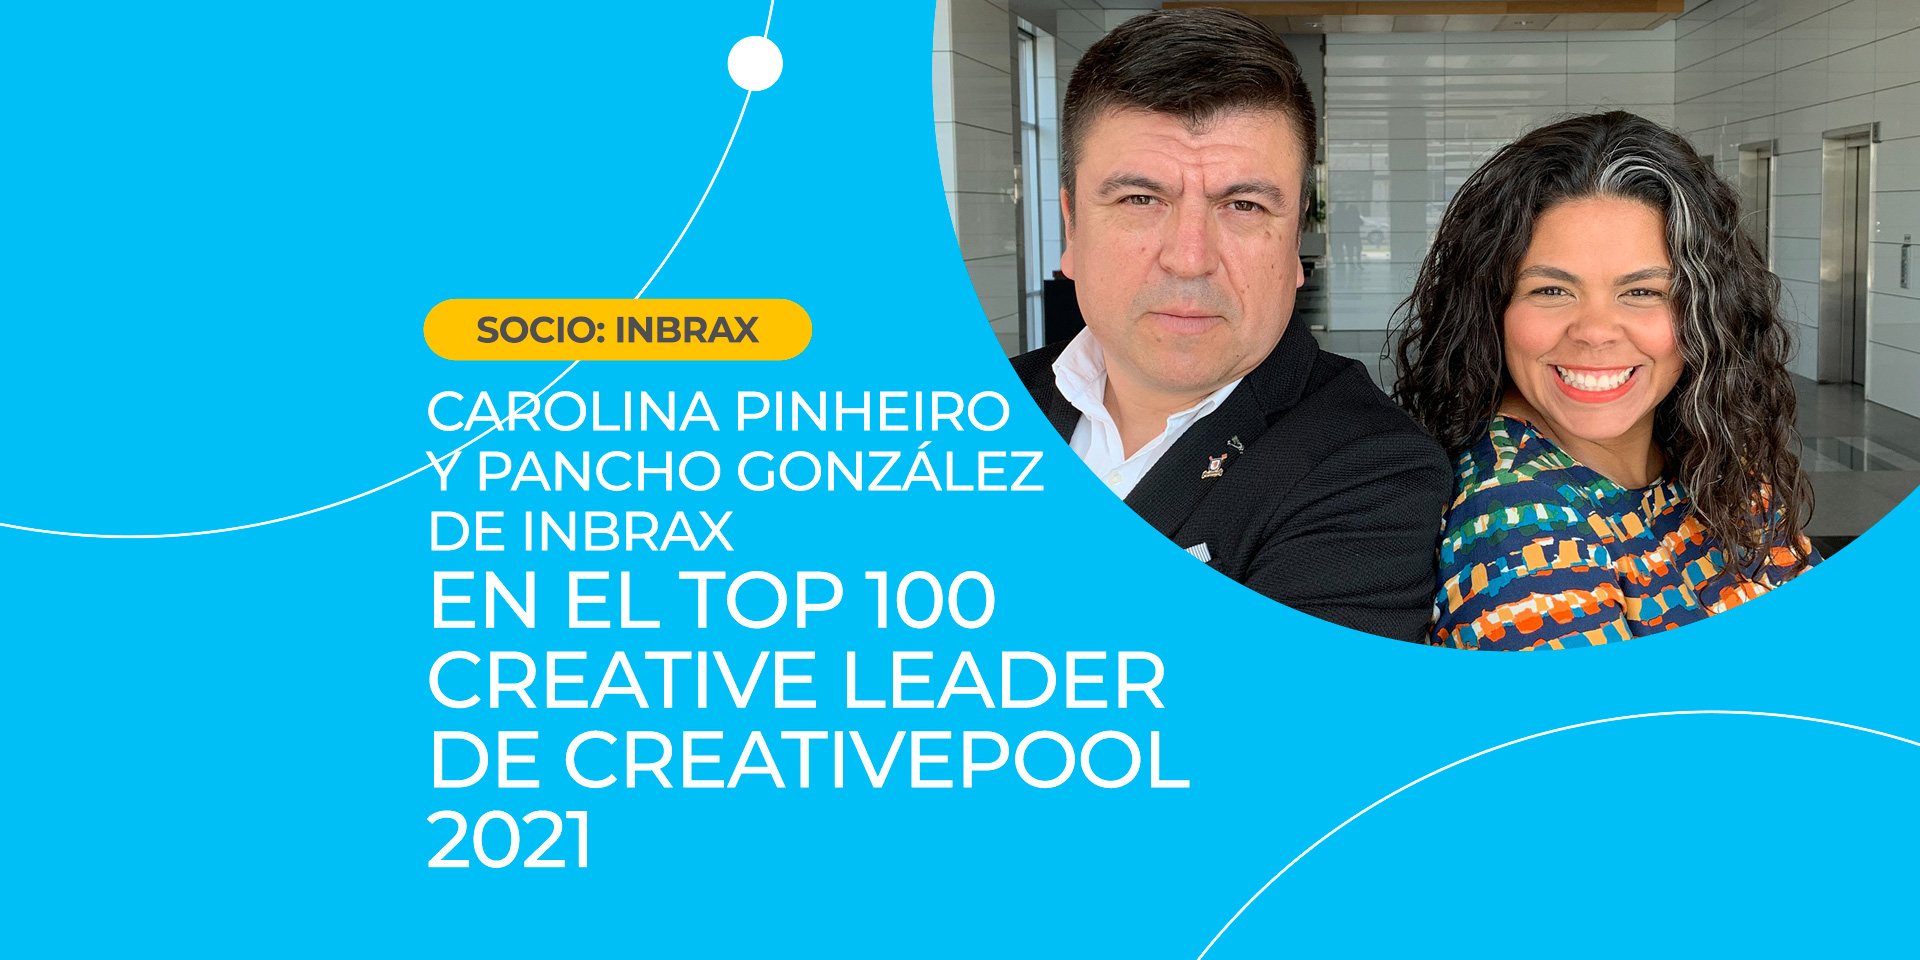 Carolina Pinheiro y Pancho González de Inbrax en el top 100 Creative Leader de Creativepool 2021